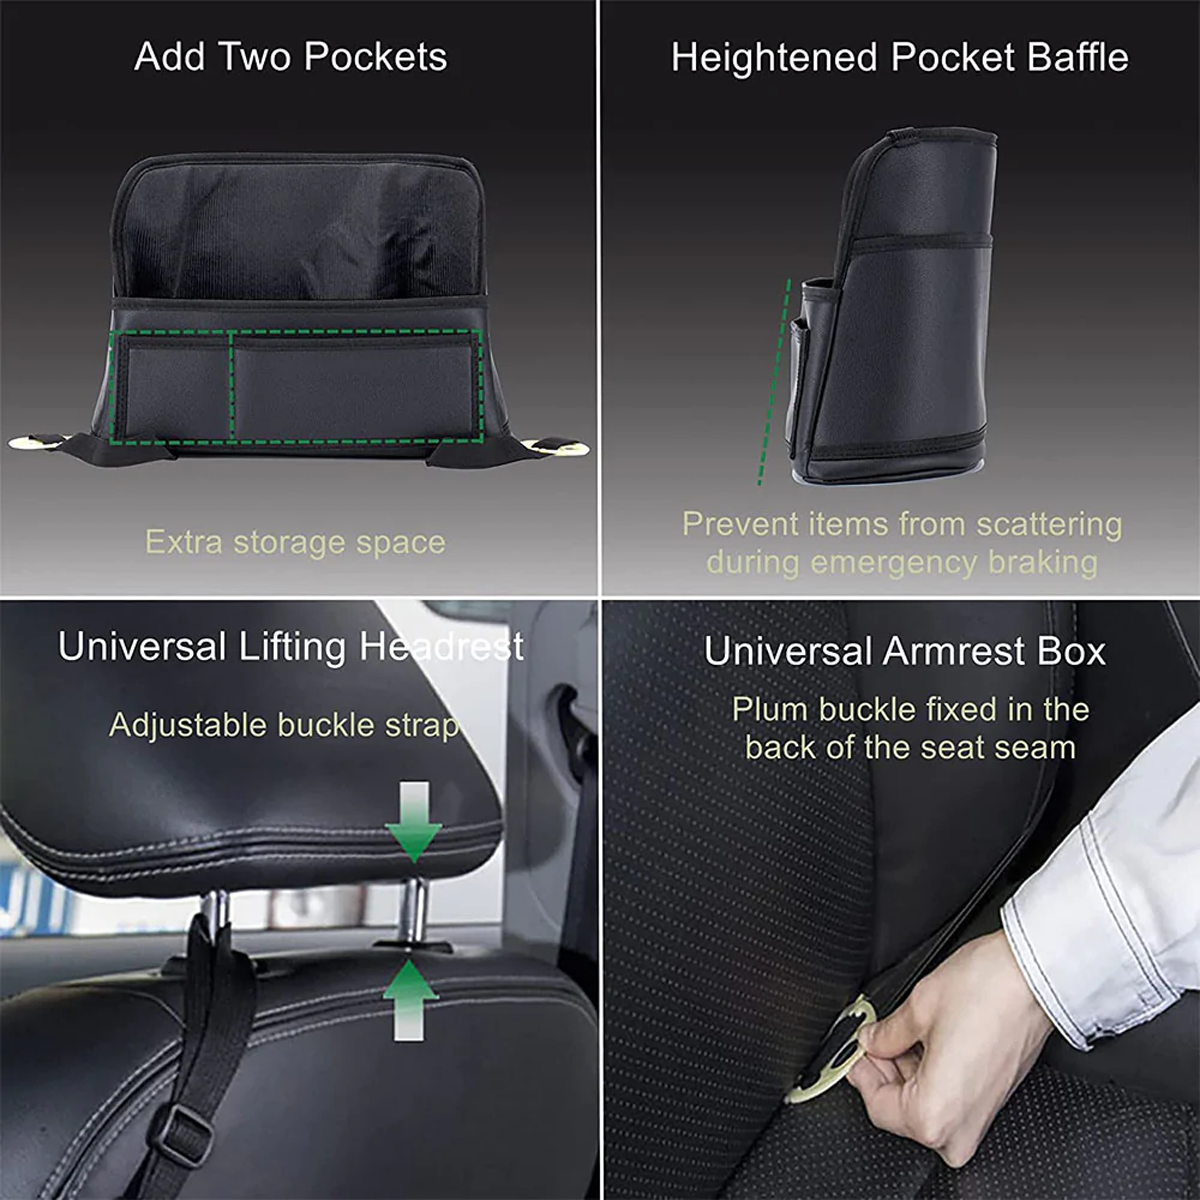 Car Purse Holder for Car Handbag Holder Between Seats Premium PU Leather, Custom Fit For Car, Hanging Car Purse Storage Pocket Back Seat Pet Barrier DLDE223